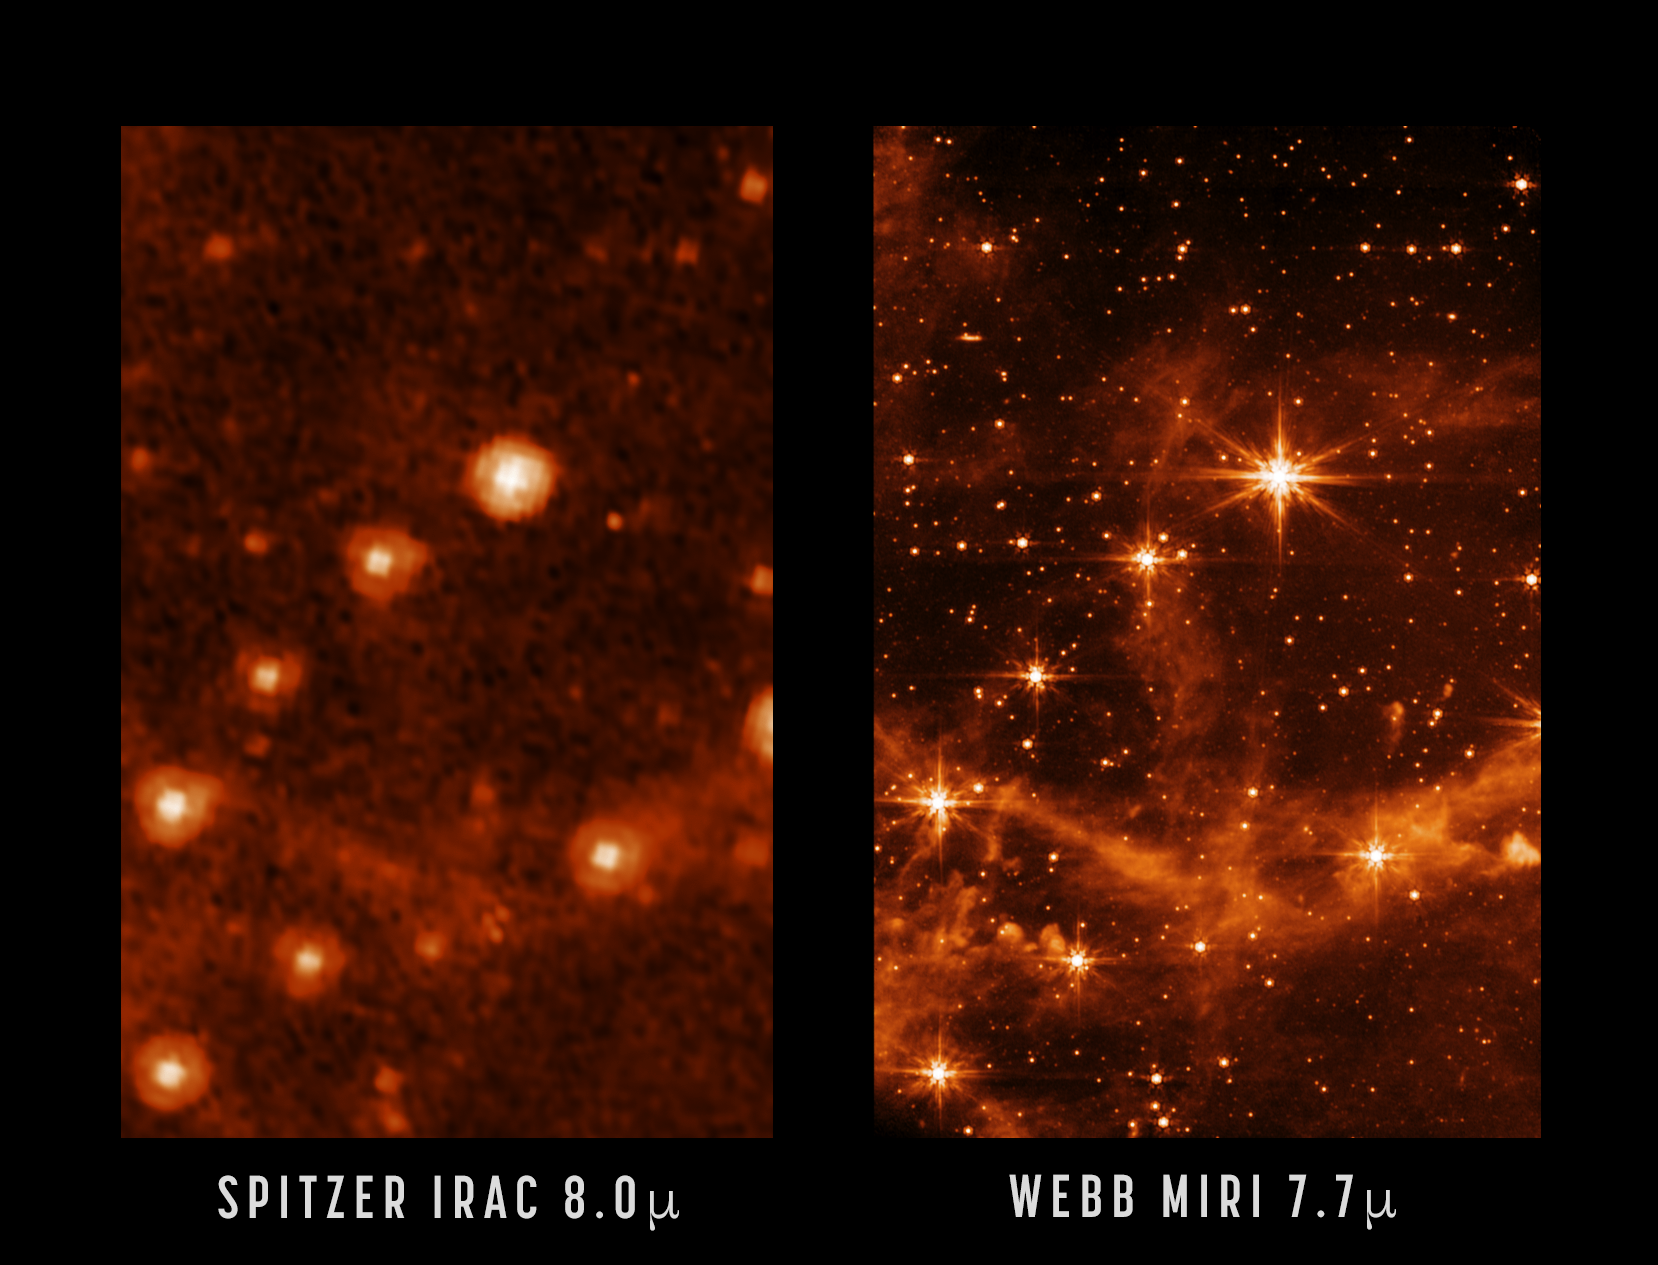 De Grote Magelhaense Wolk, zoals gezien door NASA's Spitzer Space Telescope (links) en de nieuwe James Webb Space Telescope (rechts).